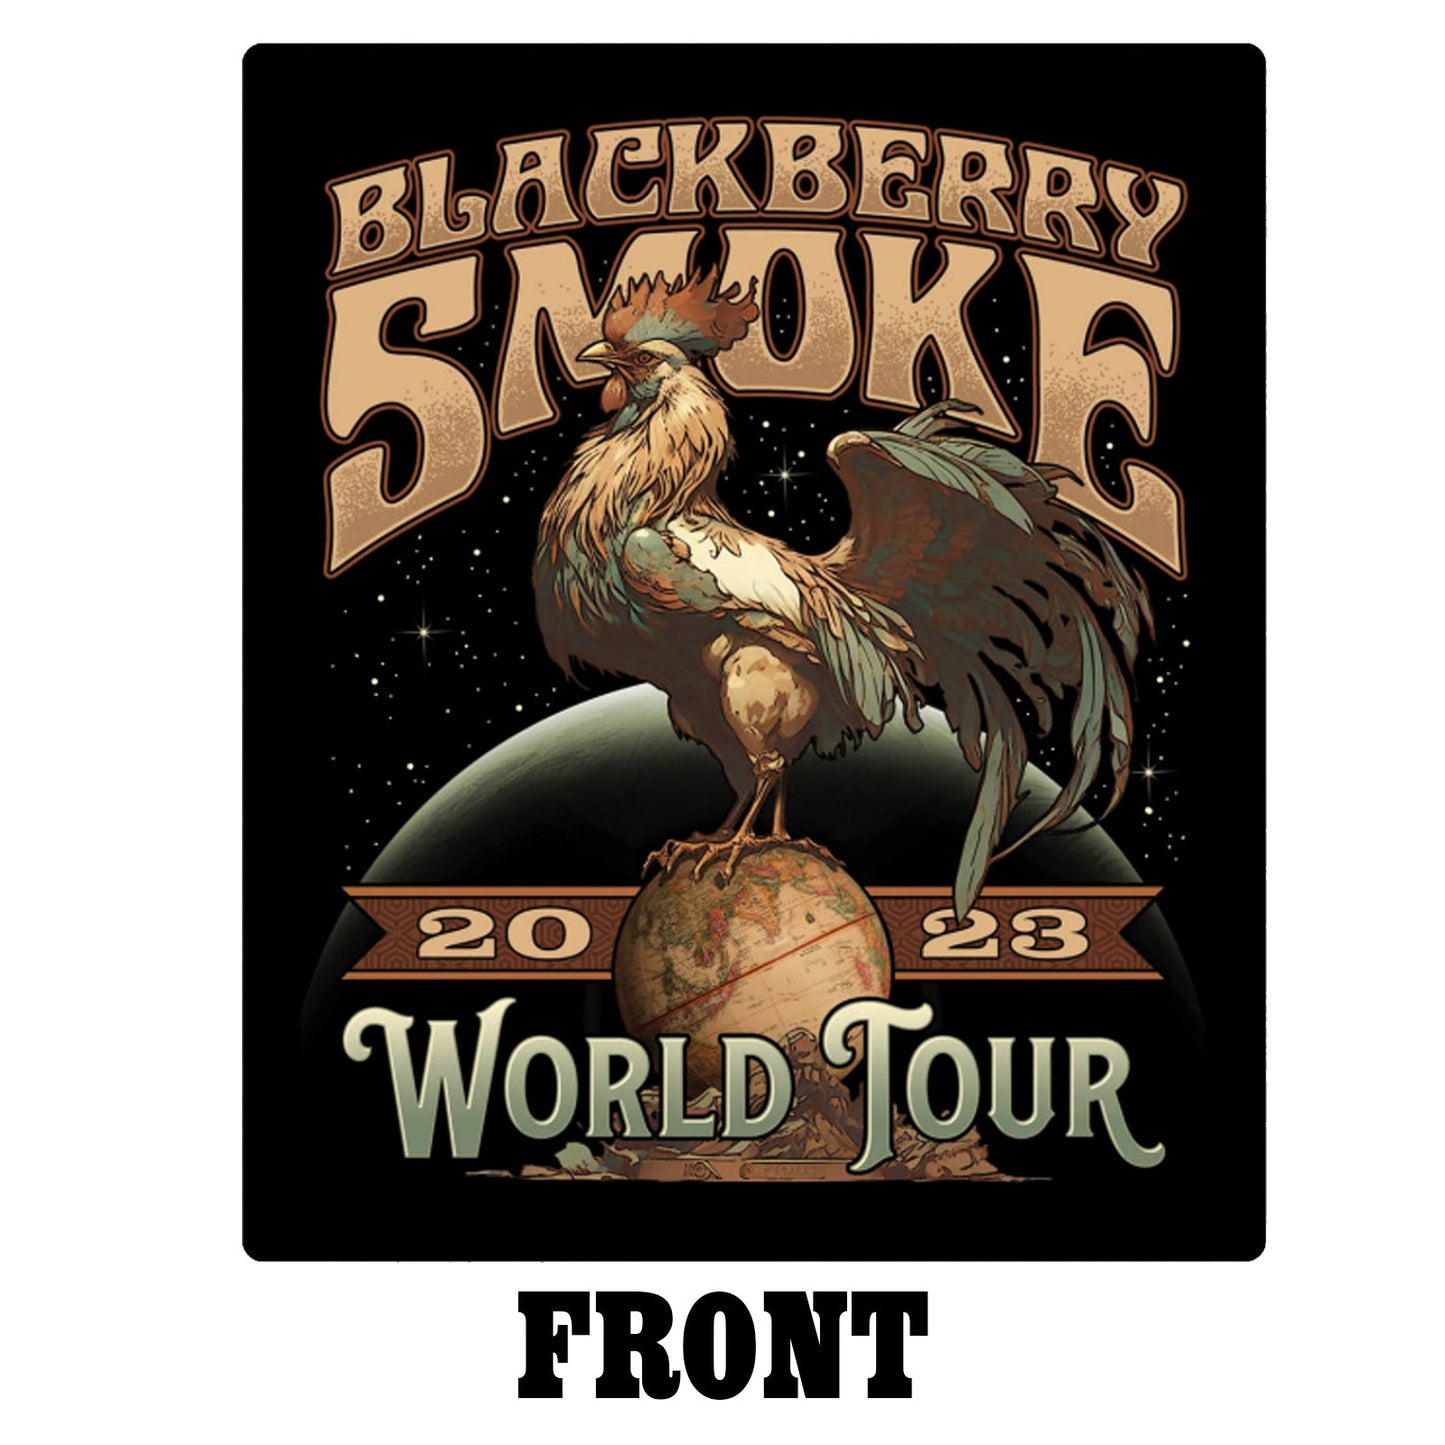 BLACKBERRY SMOKE - 2023 World Tour Tee